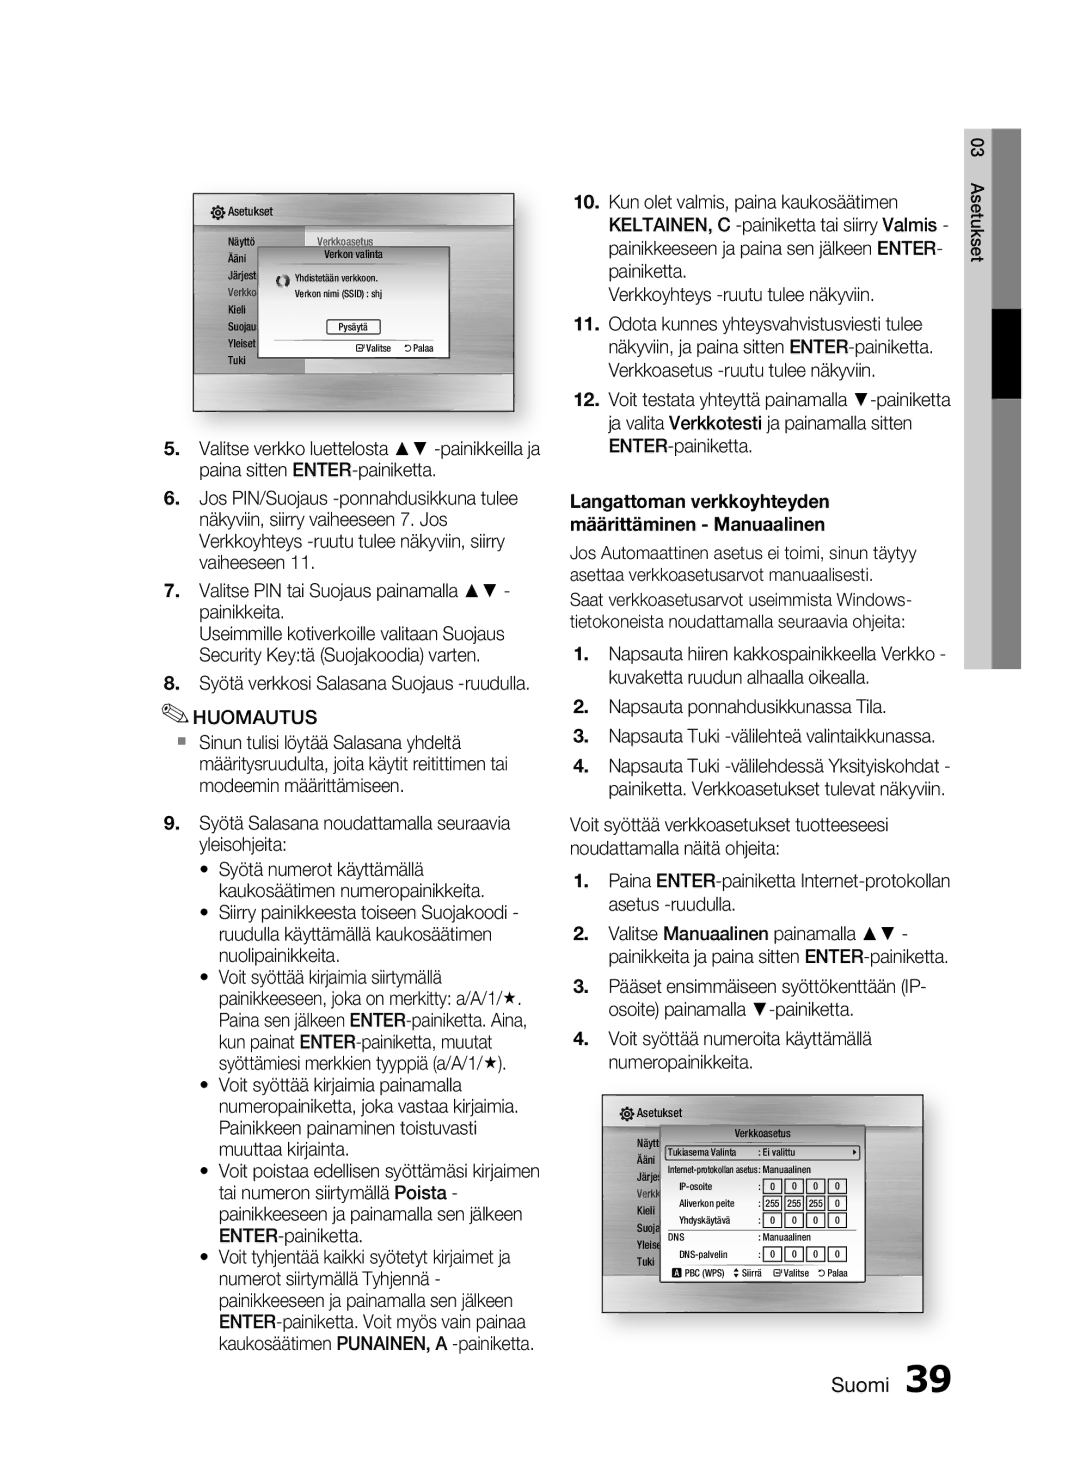 Samsung HT-C6500/XEE manual Syötä verkkosi Salasana Suojaus -ruudulla, Verkkoasetus 